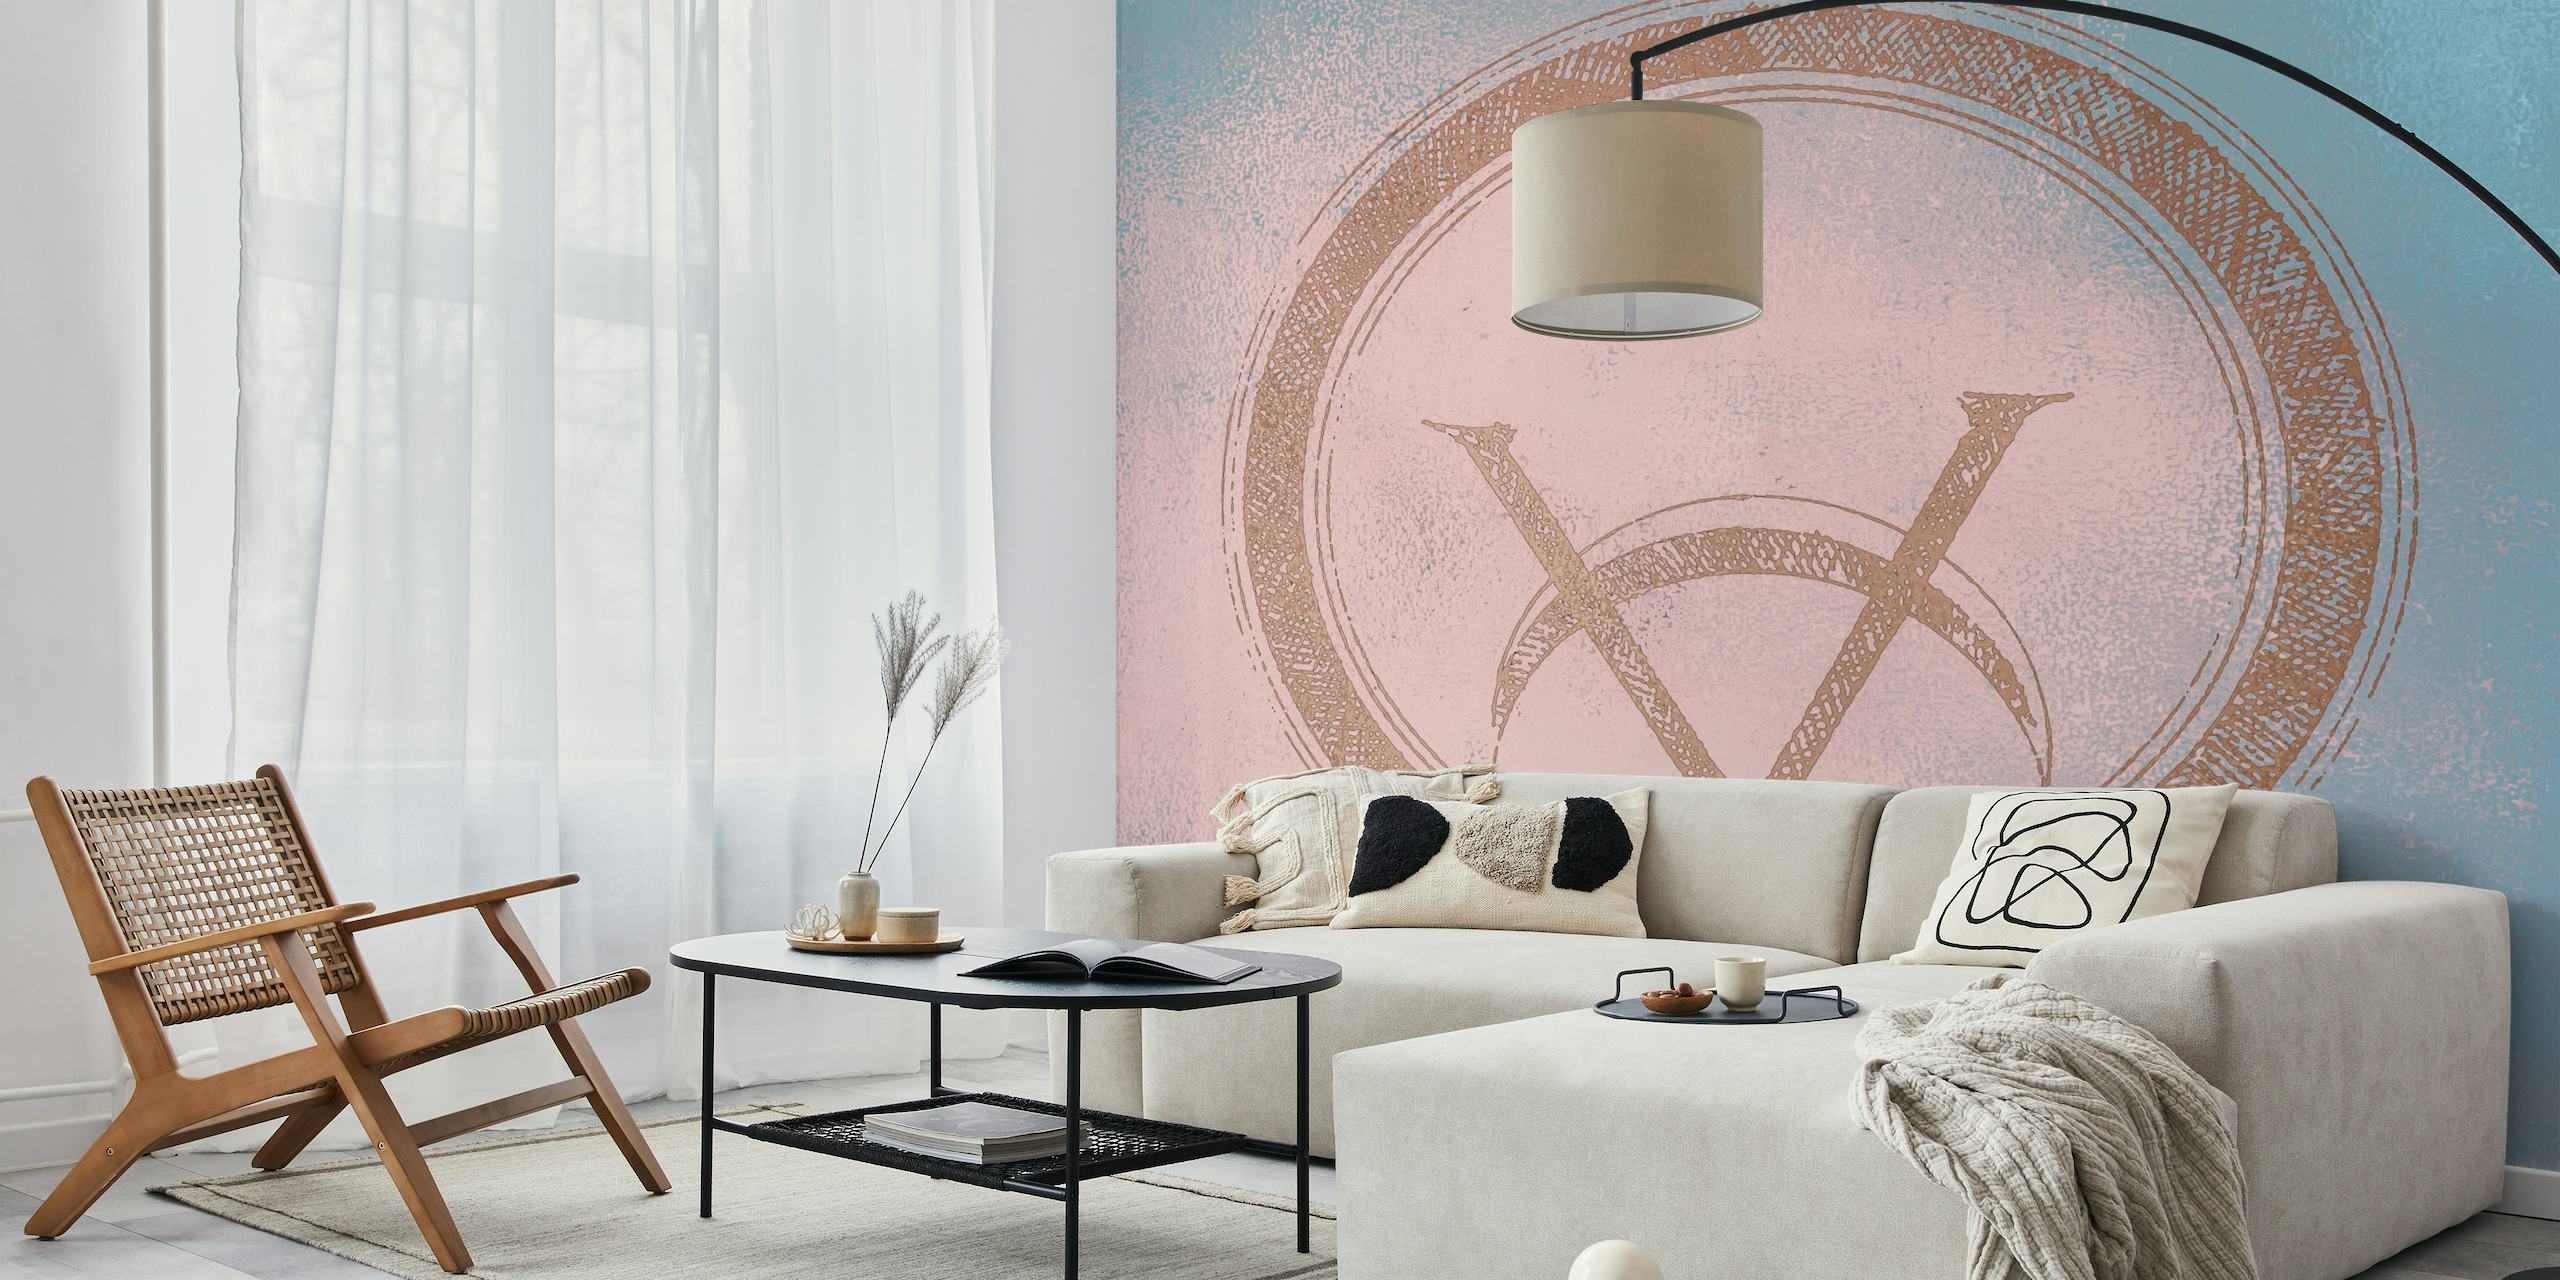 Guldhalvmåne med dekorative elementer på et tekstureret lyserødt baggrundsvægmaleri